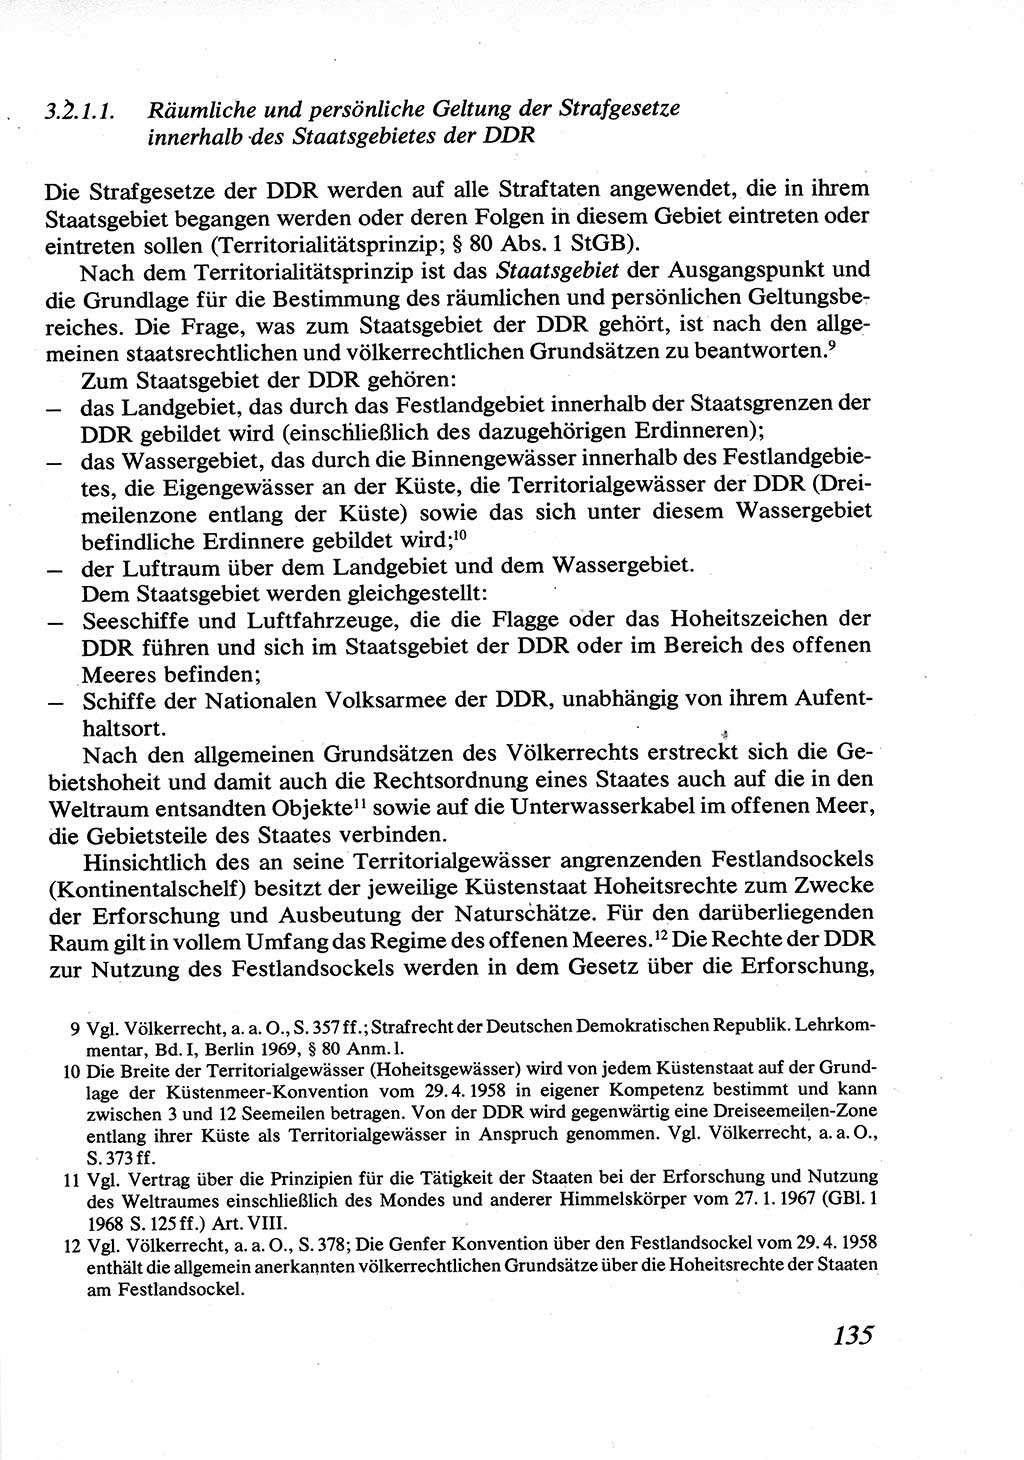 Strafrecht [Deutsche Demokratische Republik (DDR)], Allgemeiner Teil, Lehrbuch 1976, Seite 135 (Strafr. DDR AT Lb. 1976, S. 135)